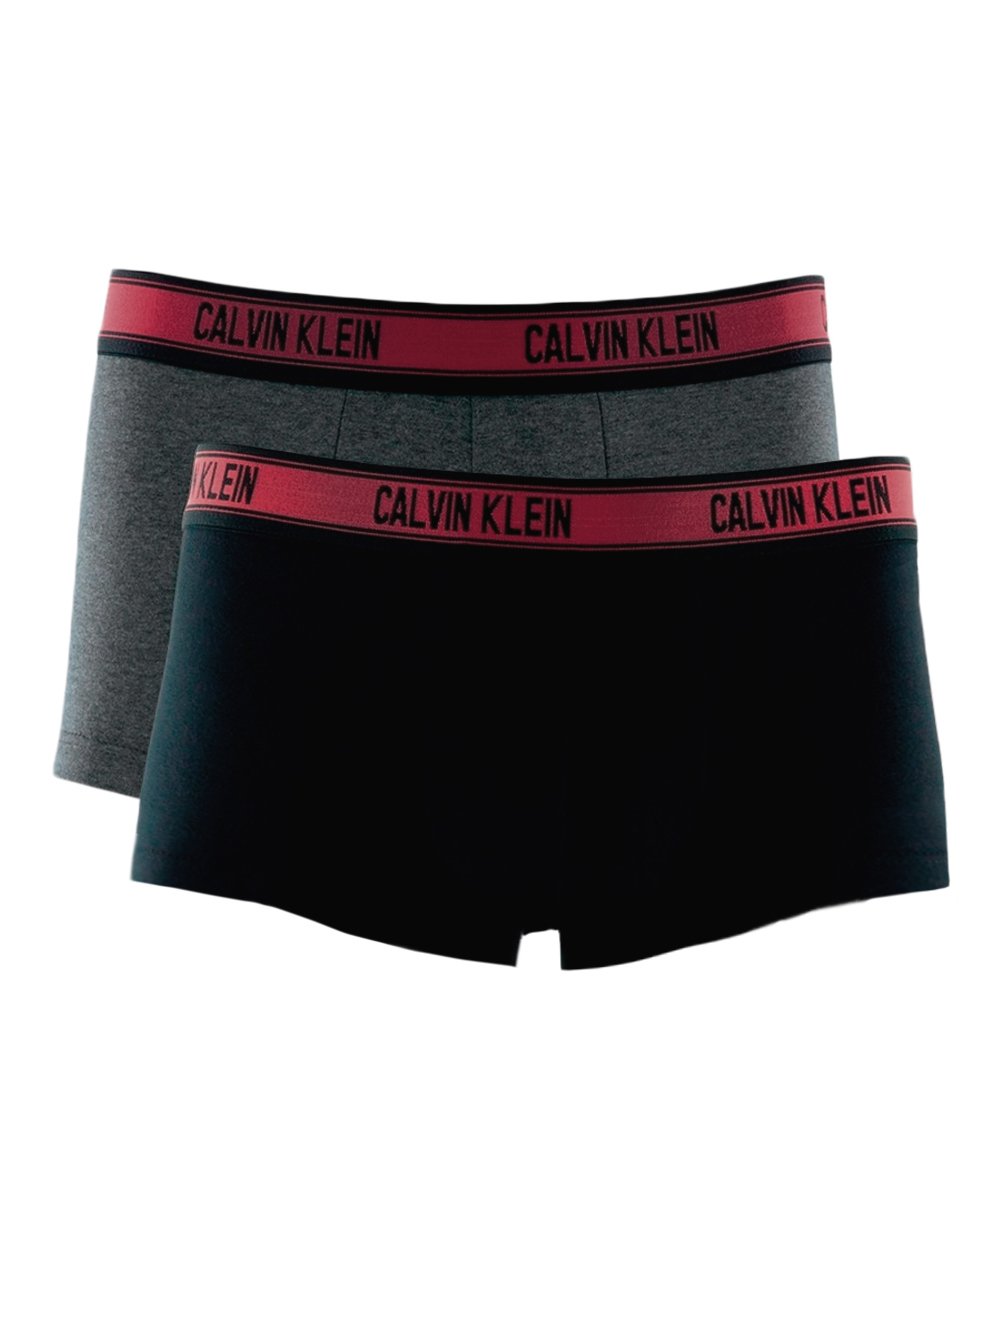 Cueca Calvin Klein Low Rise Trunk Cinza C11.02 CZ05 Pack 2UN